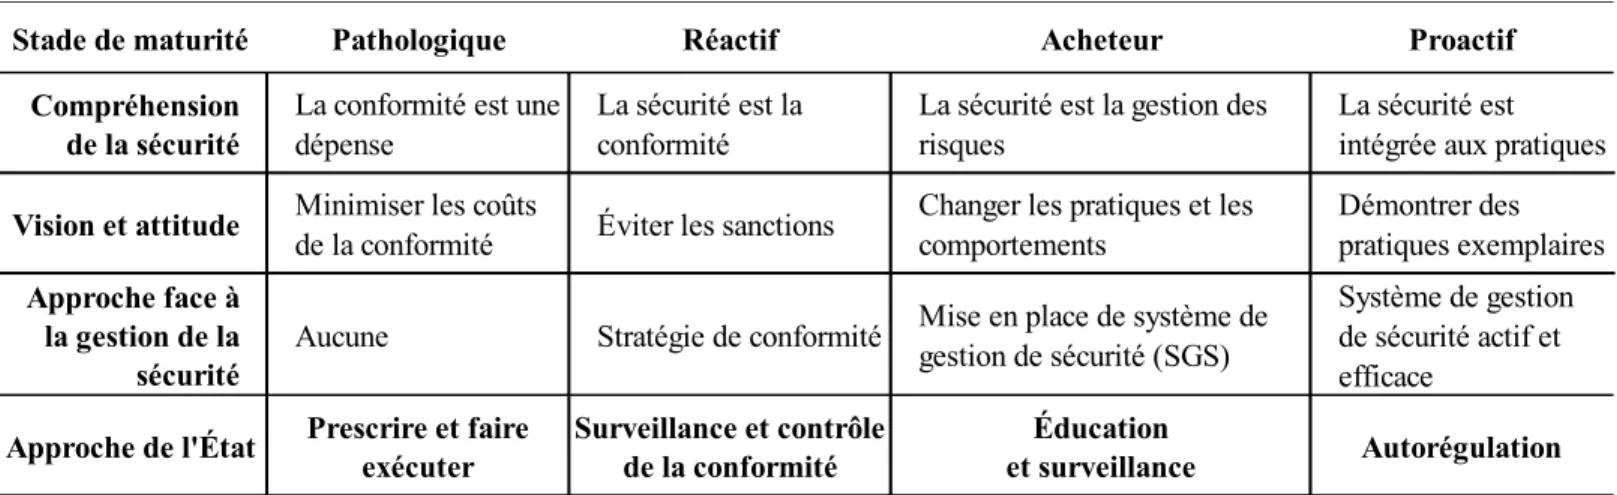 Tableau 18 : Sommaire des stades de maturité de la culture de sécurité et approches de l’État